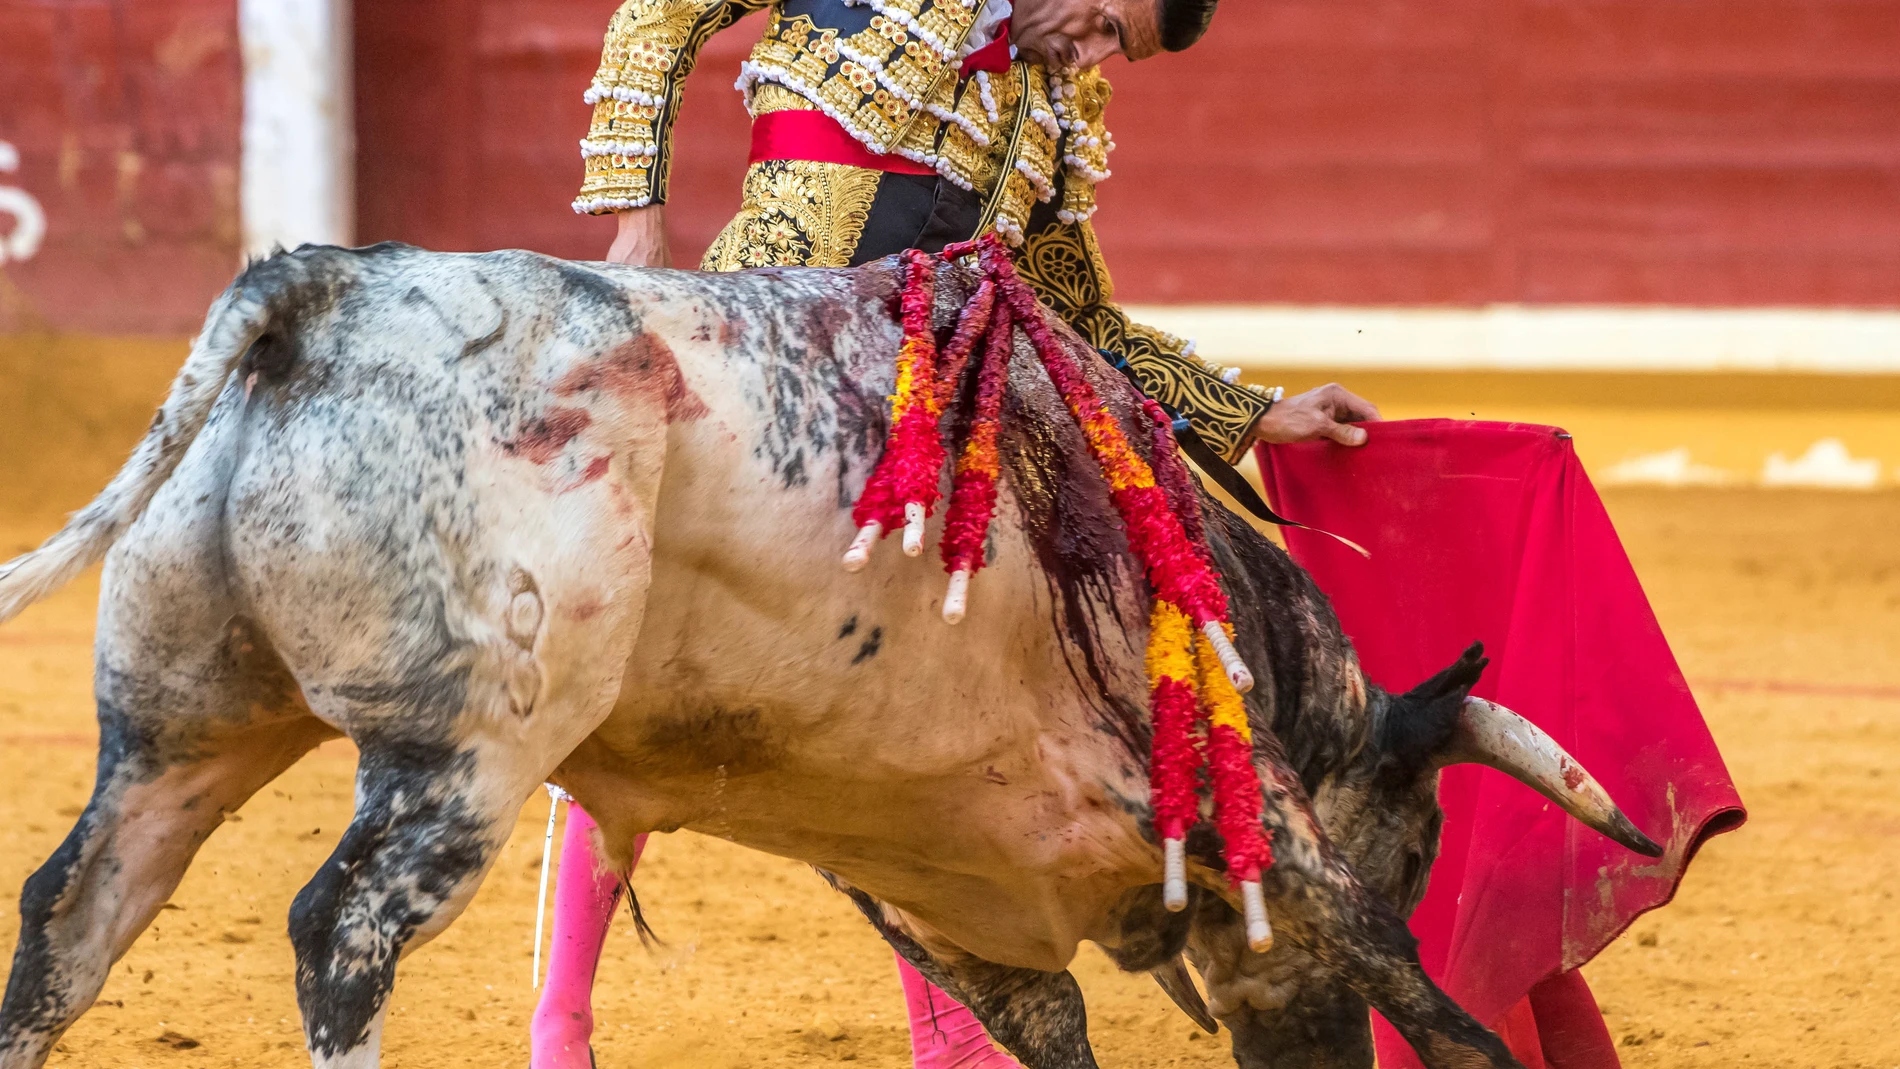 Illescas (Toledo), 29-08-2021-. corrida de toros en un cartel en el que se anuncian Miguel Ángel Perera y Emilio de Justo (toreando) frente a toros de la ganadería de Rehuelga. Segundo toro. EFE/Ismael Herrero